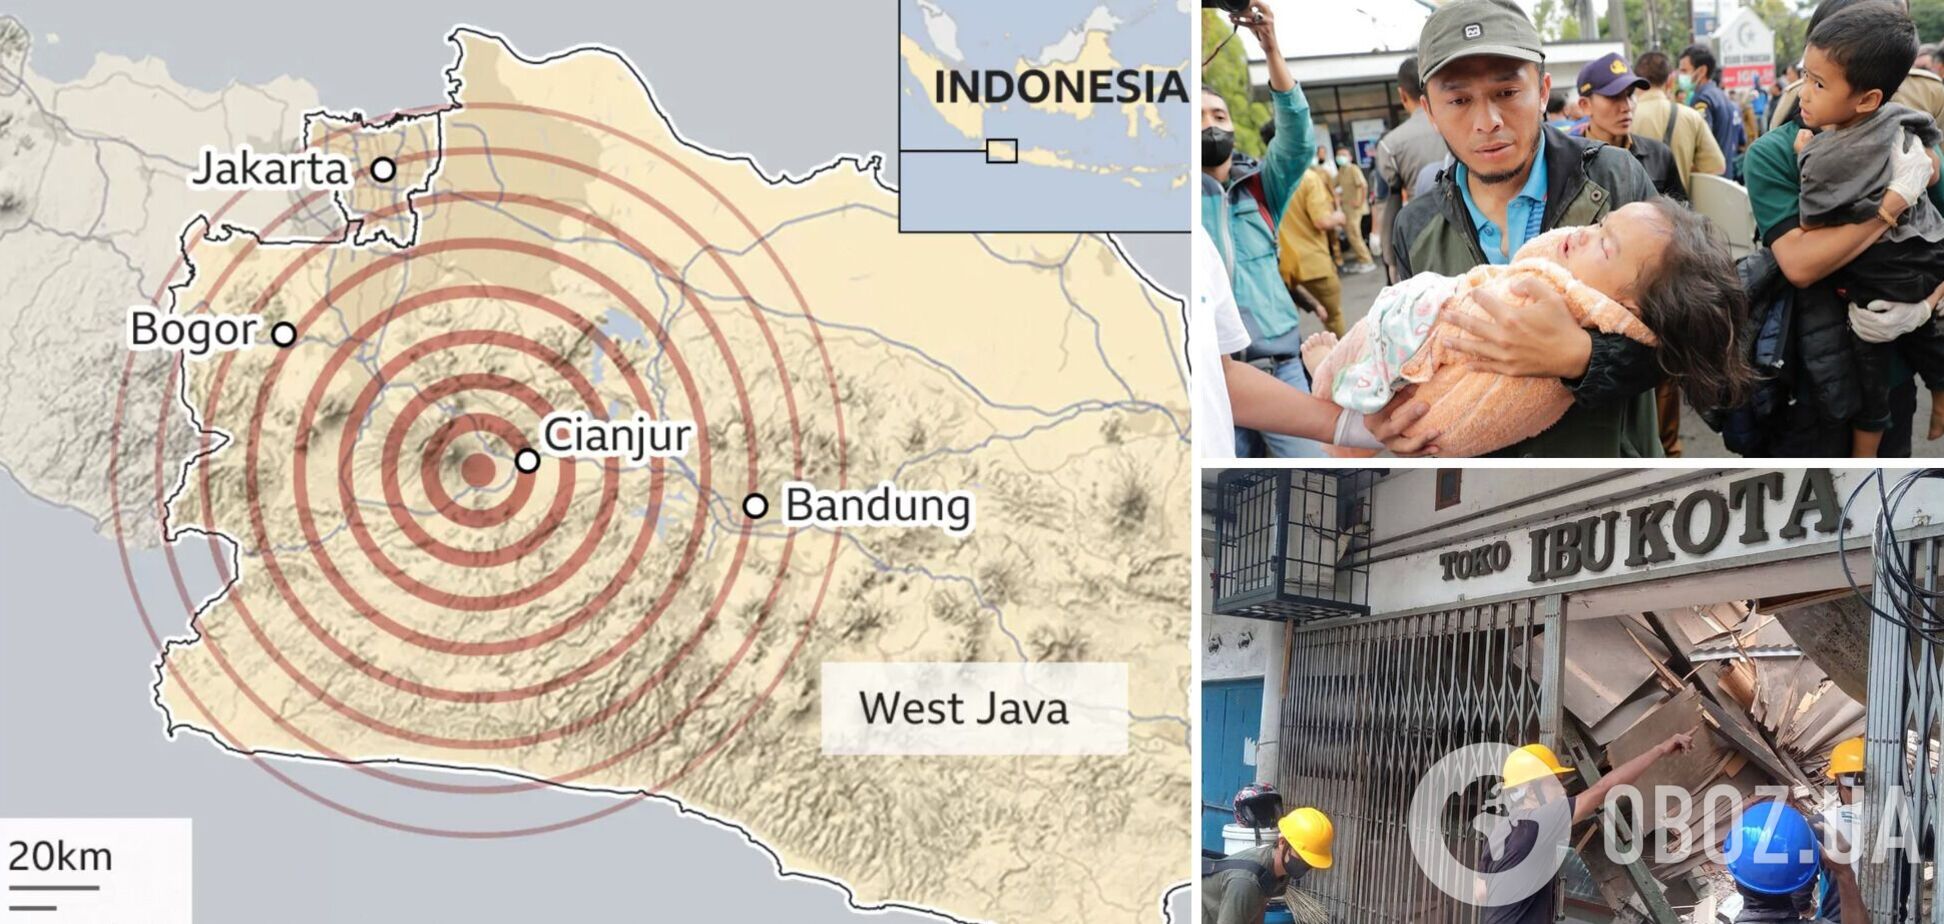 В Индонезии в результате землетрясения погибли 252 человека, среди жертв много детей. Фото и видео